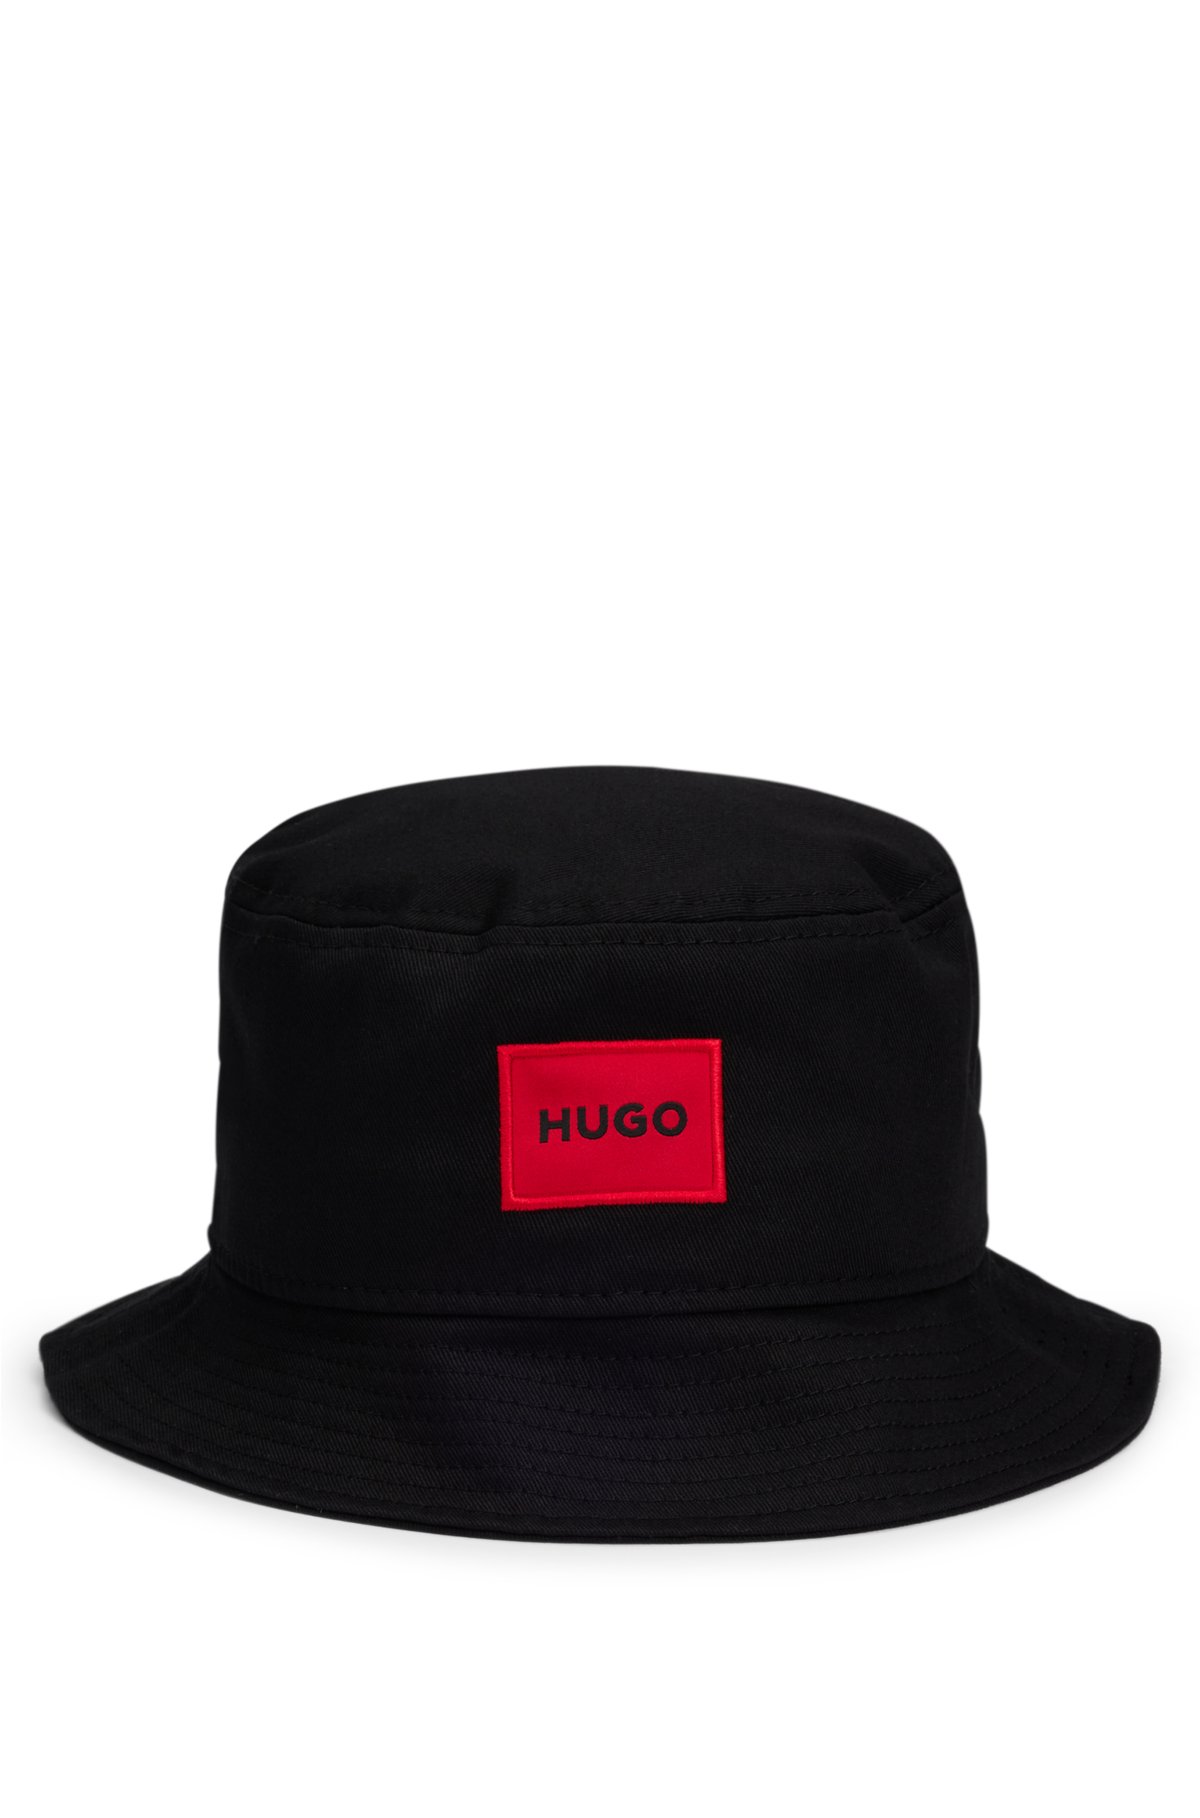 HUGO - バケットハット コットンツイル レッドロゴラベル